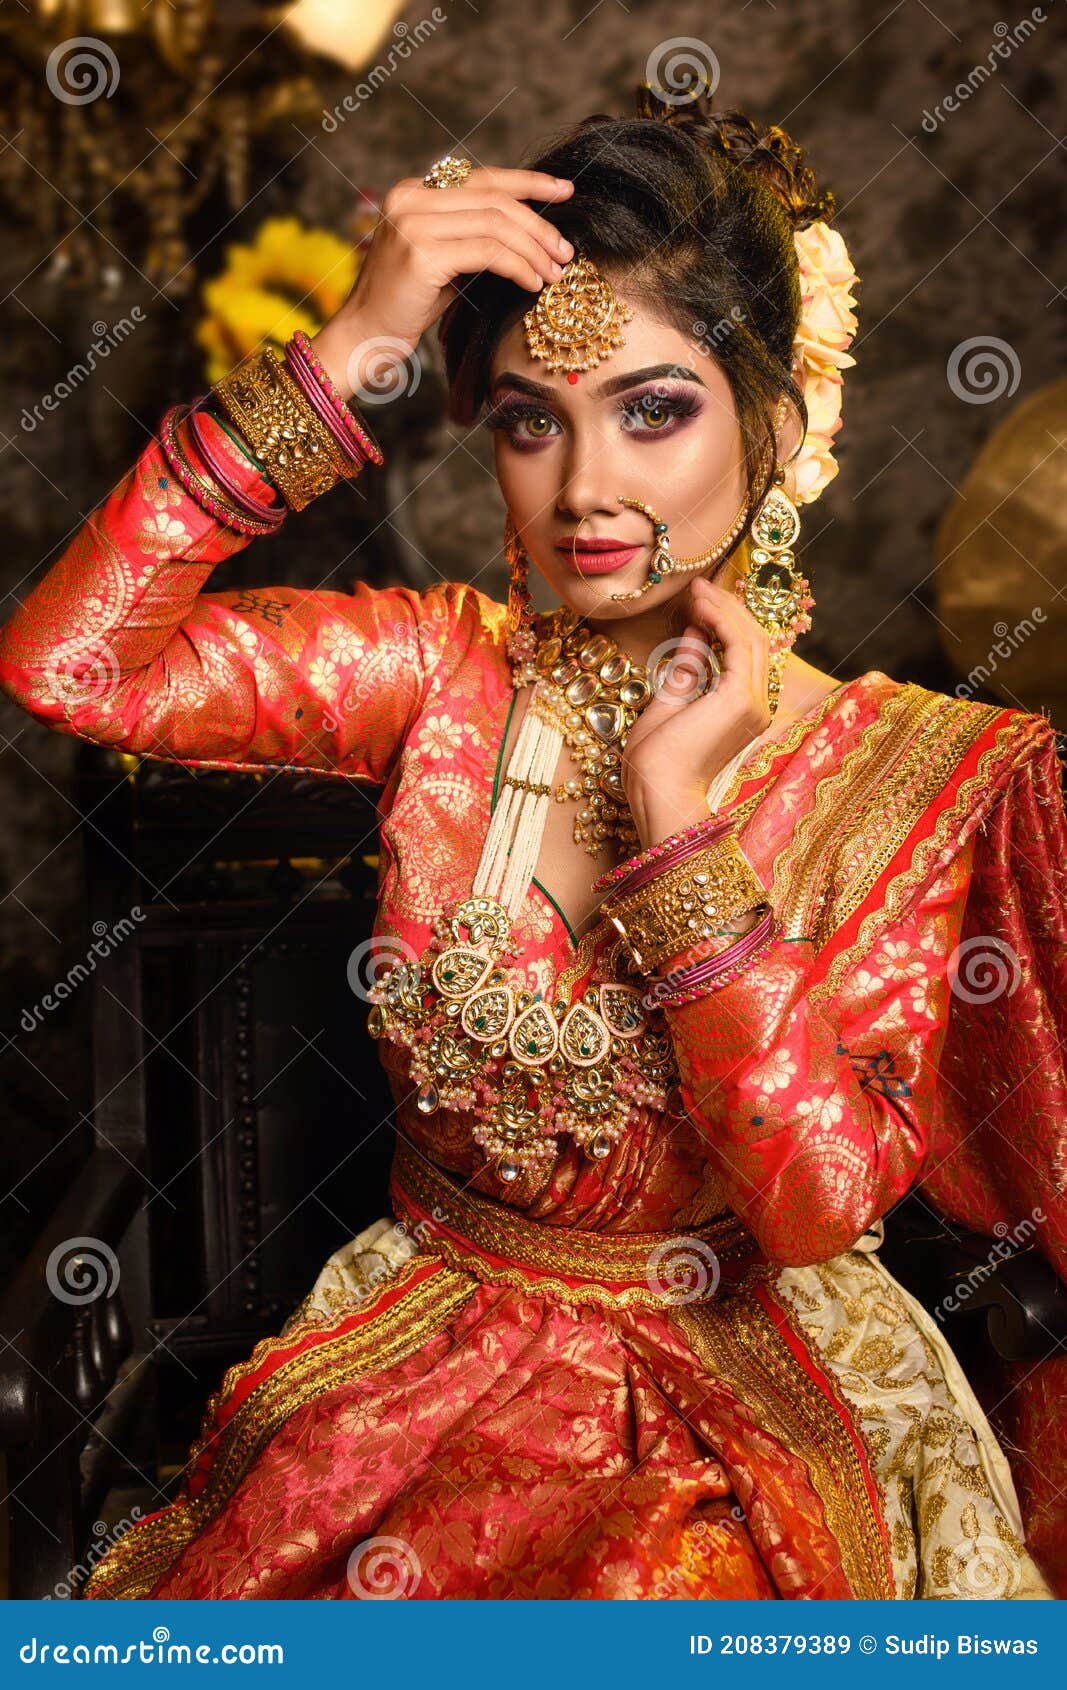 ❤️ COUPLE SHOOT❤️ | Bride photos poses, Photo poses for couples, Indian  bride photography poses